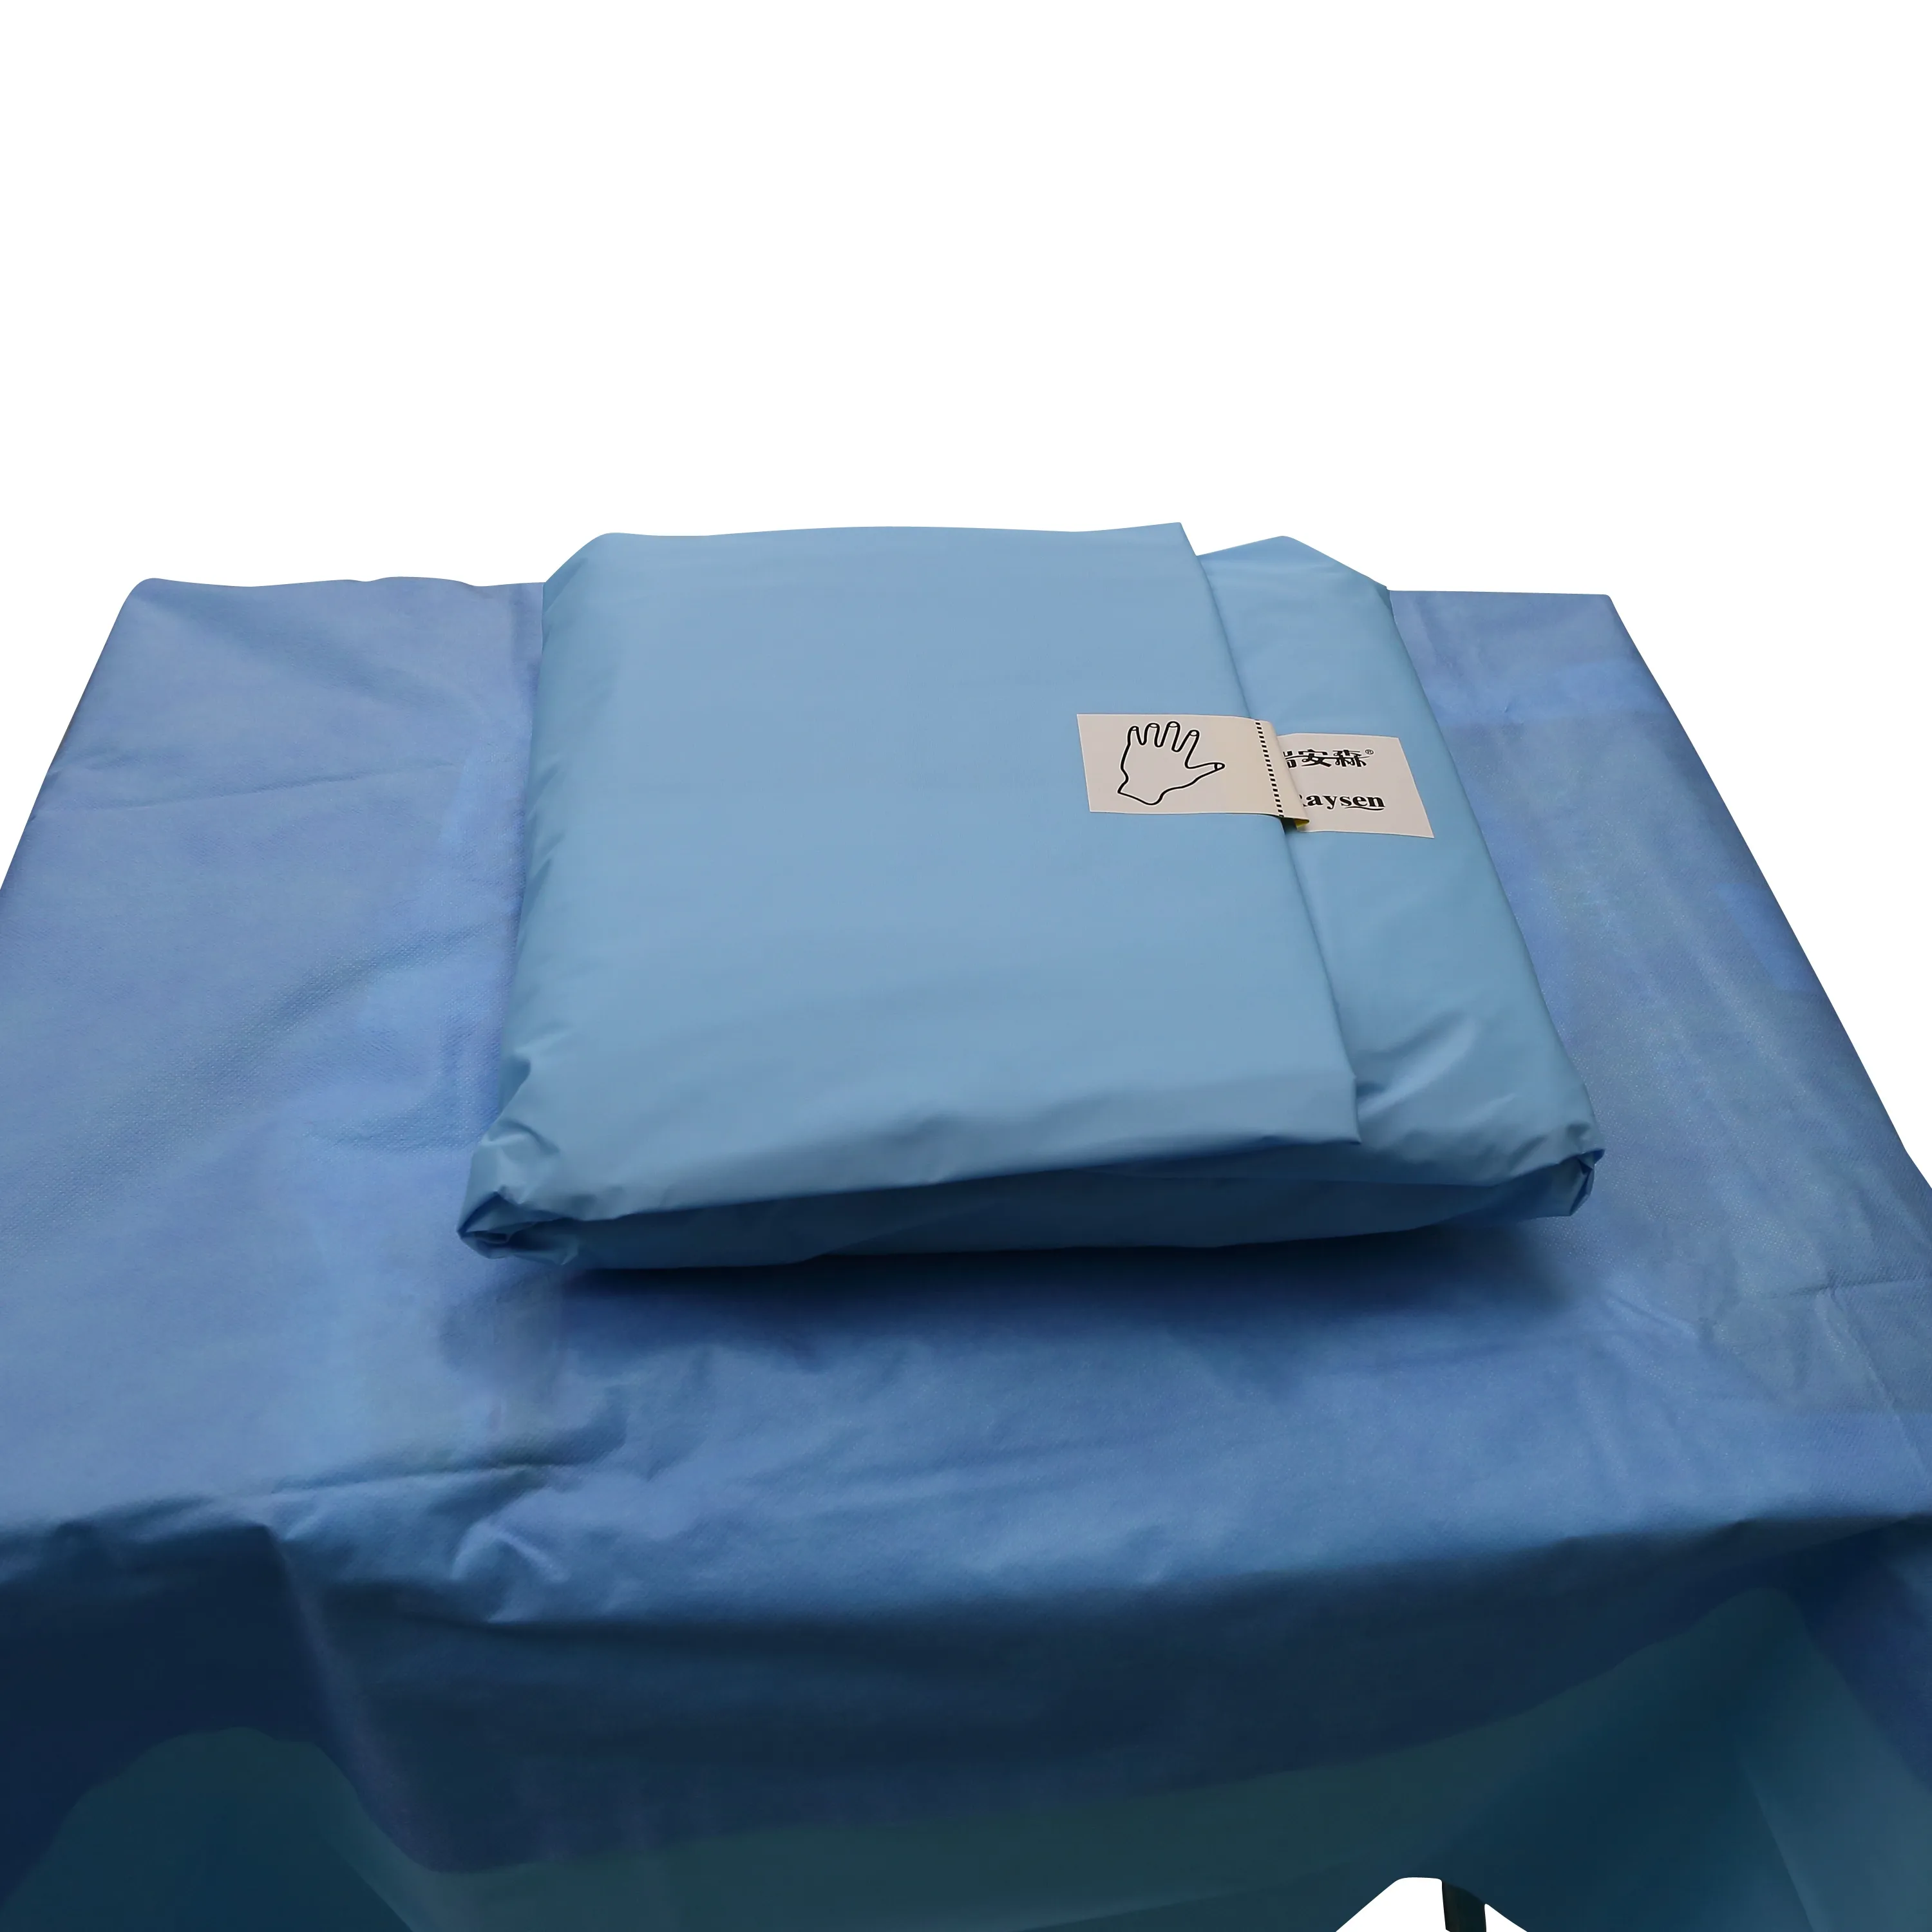 Высокое качество EO Стерильные индивидуальные размеры одноразовые хирургические портьеры пакет для больниц